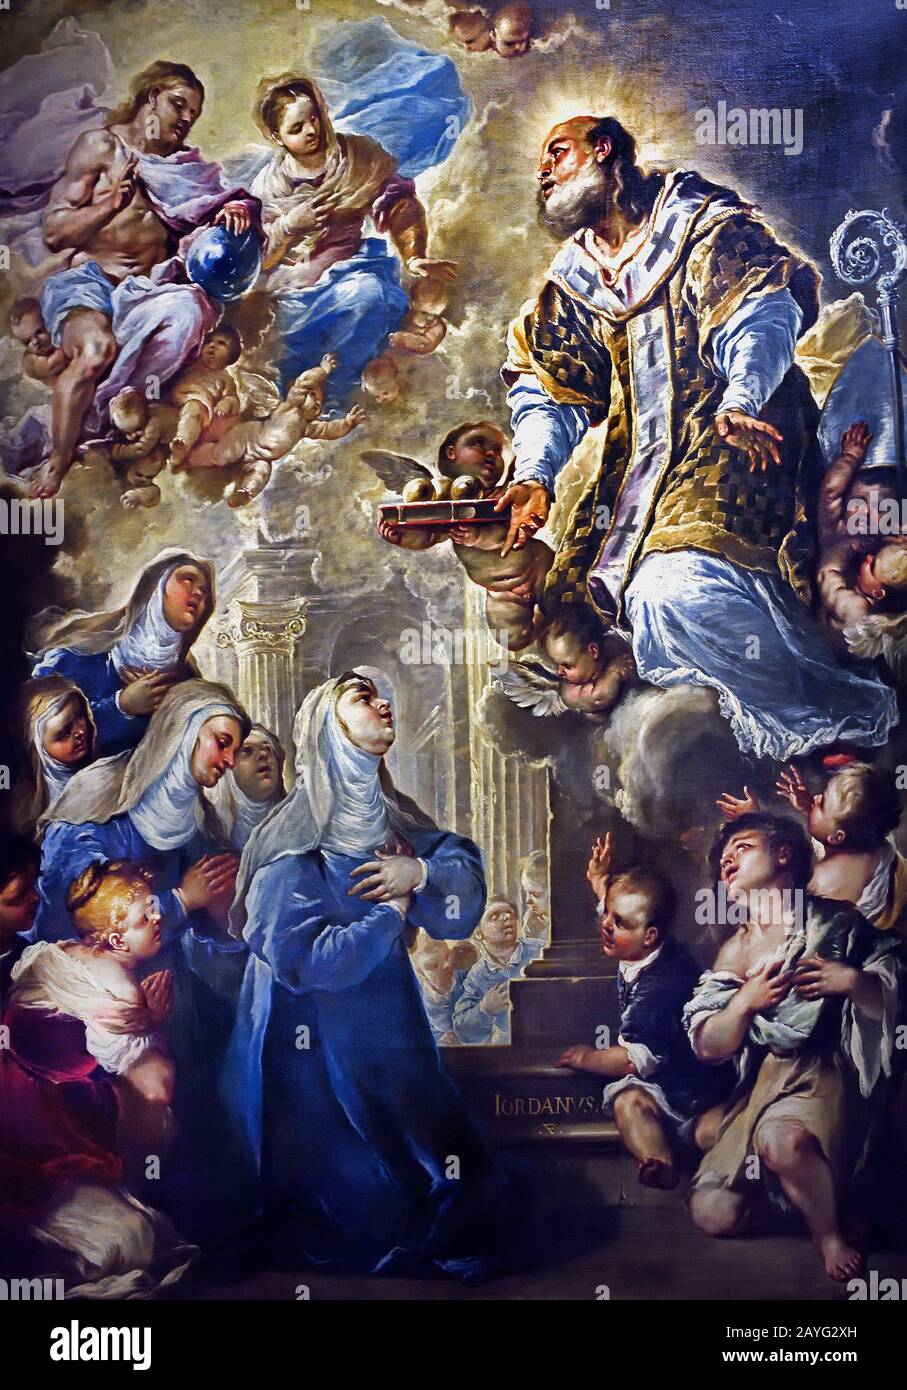 Saint Nicolas en Gloire - Saint Nicolas dans la gloire 1659 par Luca Giordano 1634-1705 était un peintre baroque tardif italien, Italie, ( Saint Nicolas était un saint du 4ème siècle et évêque grec de Myra. ) Banque D'Images